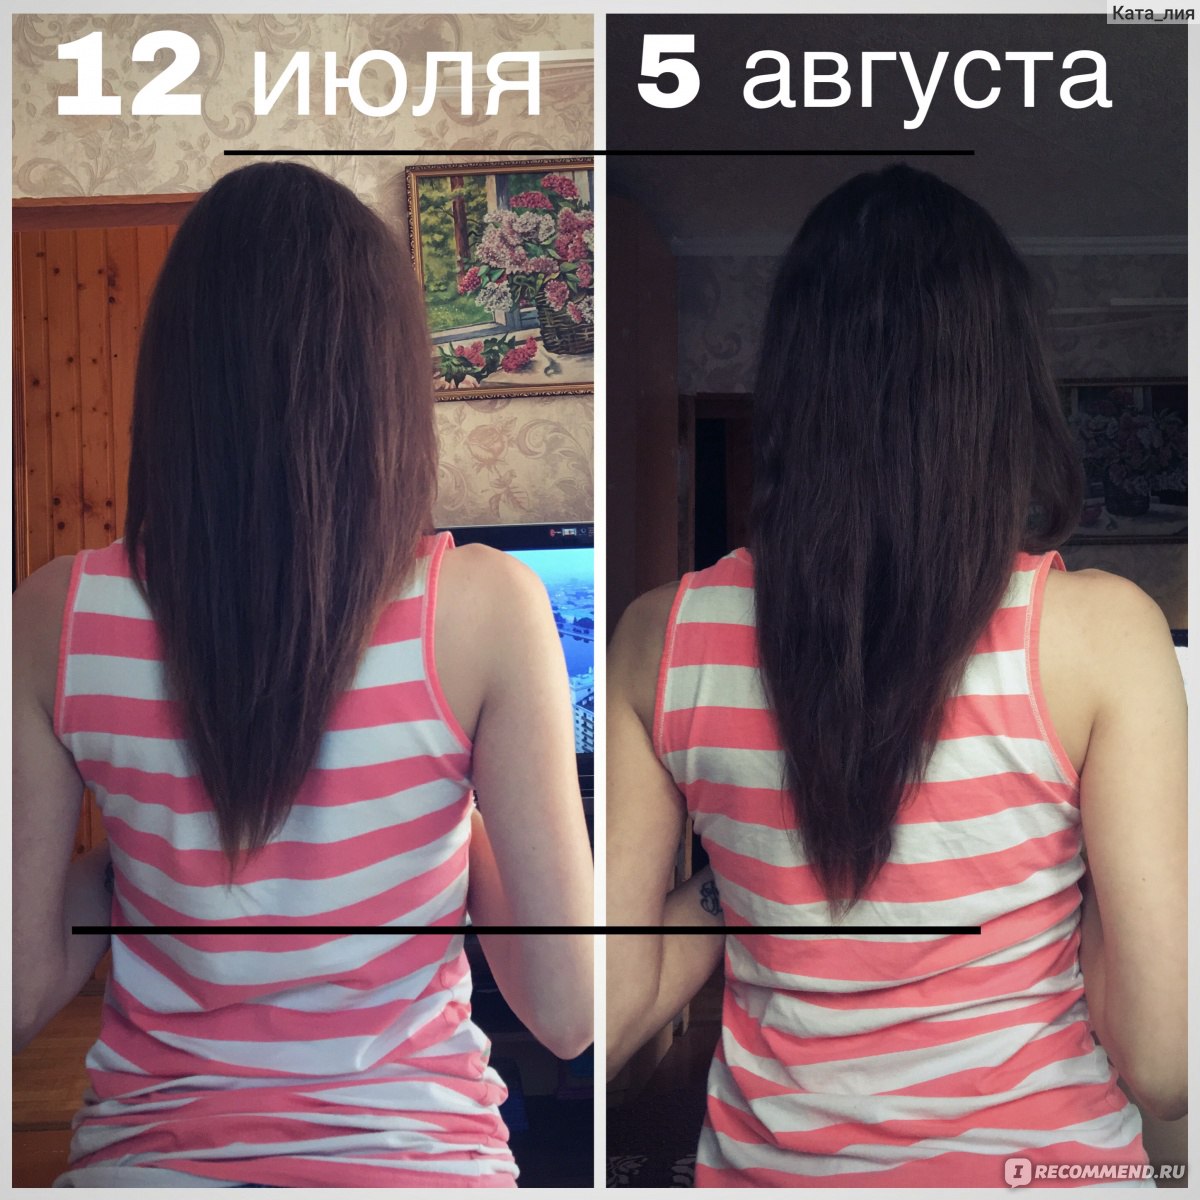 Результаты роста волос. Никотиновая кислота для волос до и после. Никотиновая кислота для роста волос. Никотиновая кислота для волос до и после рост. Никотинка для волос до и после.